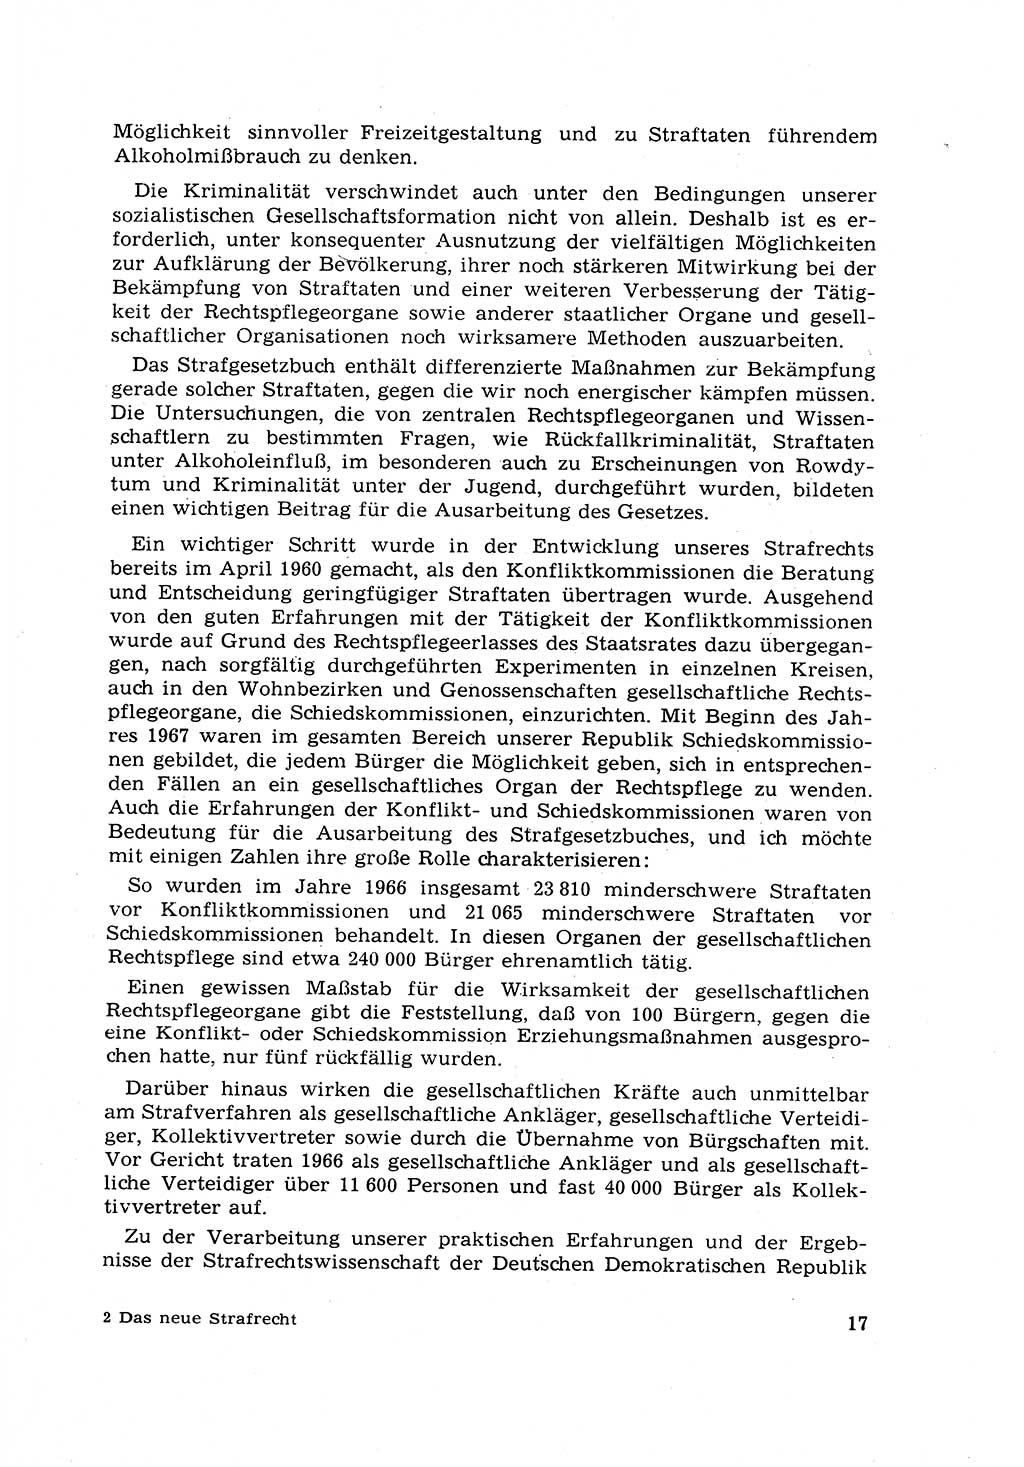 Strafrecht [Deutsche Demokratische Republik (DDR)] 1968, Seite 17 (Strafr. DDR 1968, S. 17)